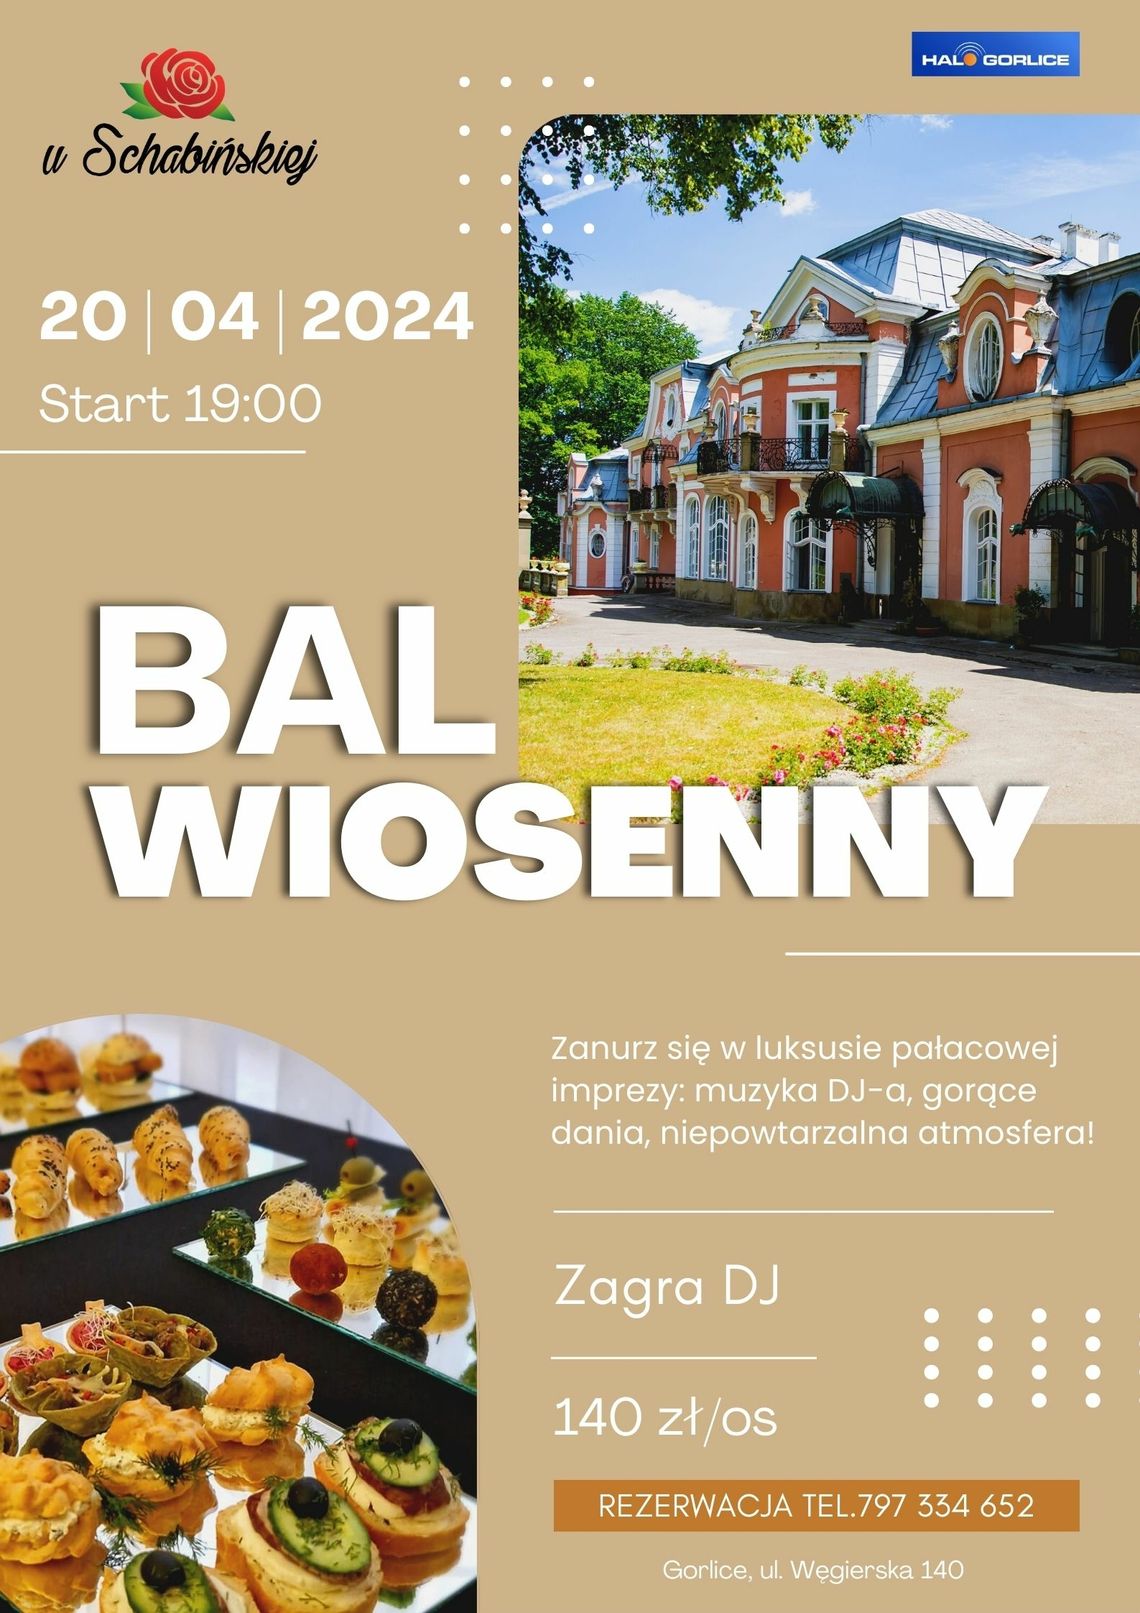 Bal wiosenny  –  U Schabińskiej | halogorlice.info